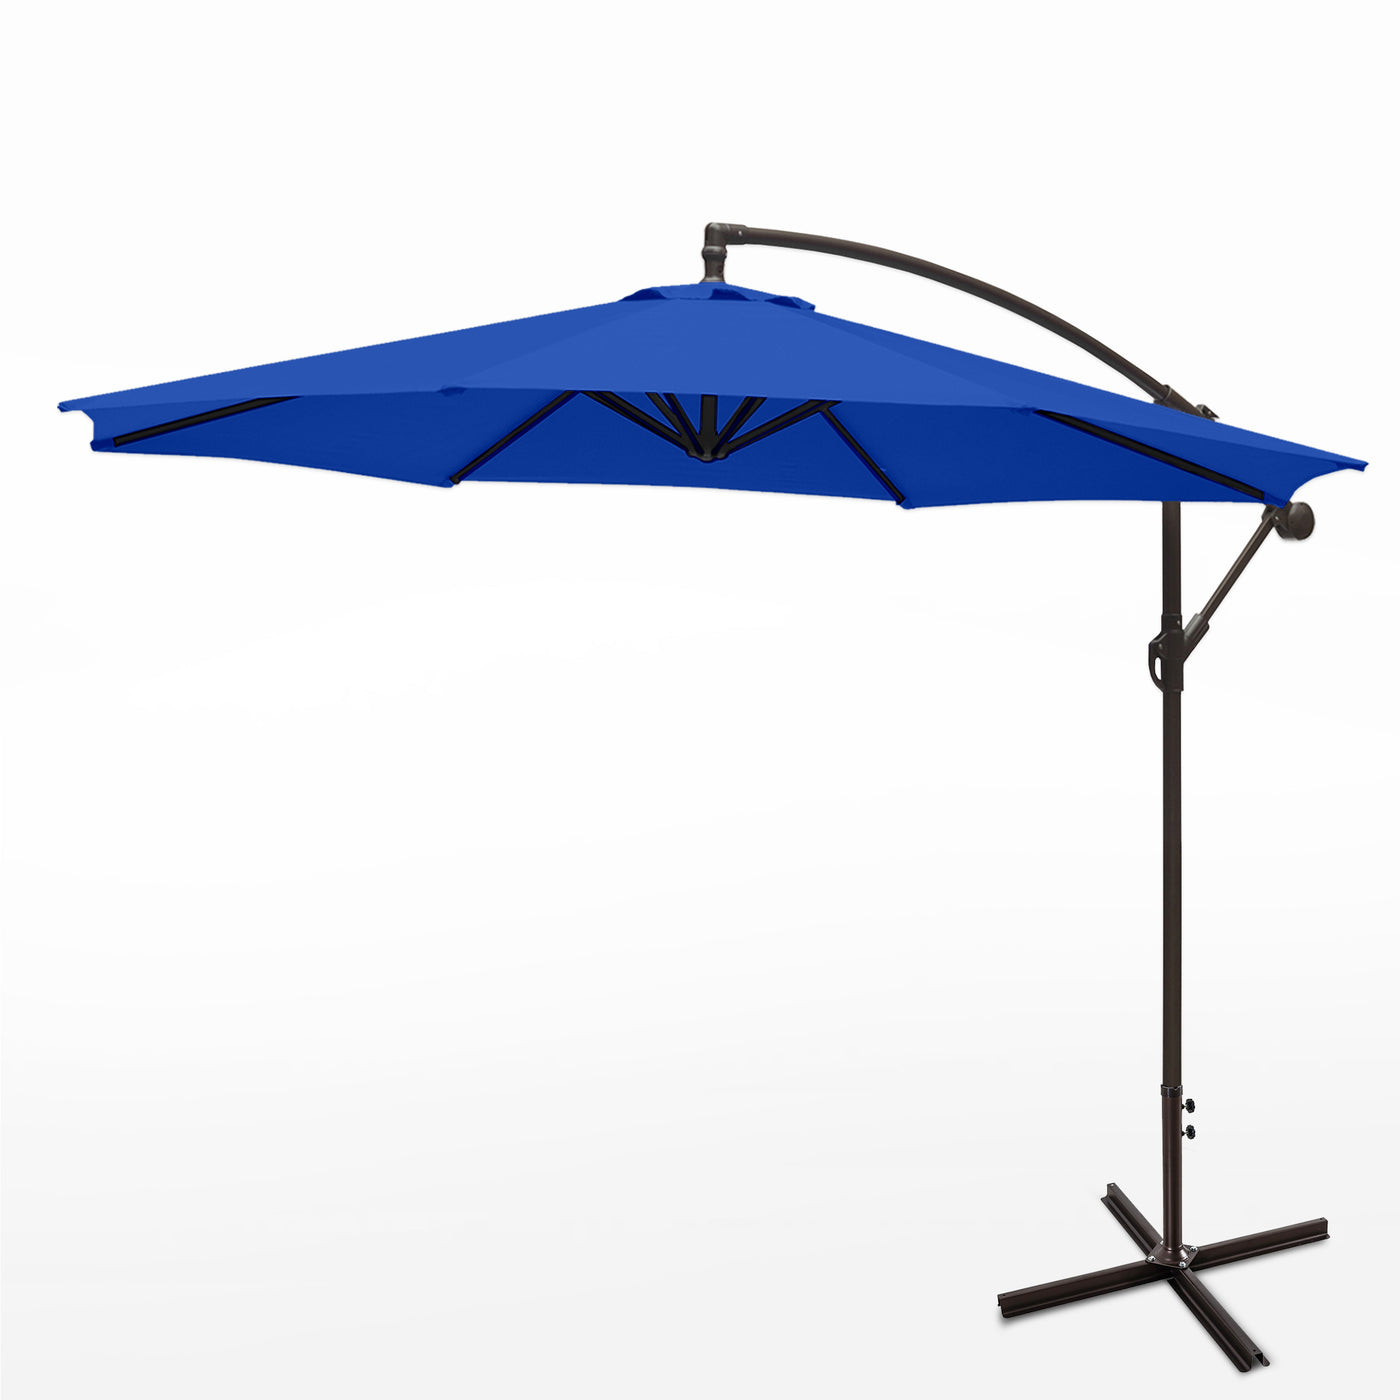 Moriti 10 Ft Outdoor Patio Cantilever Offset Umbrella